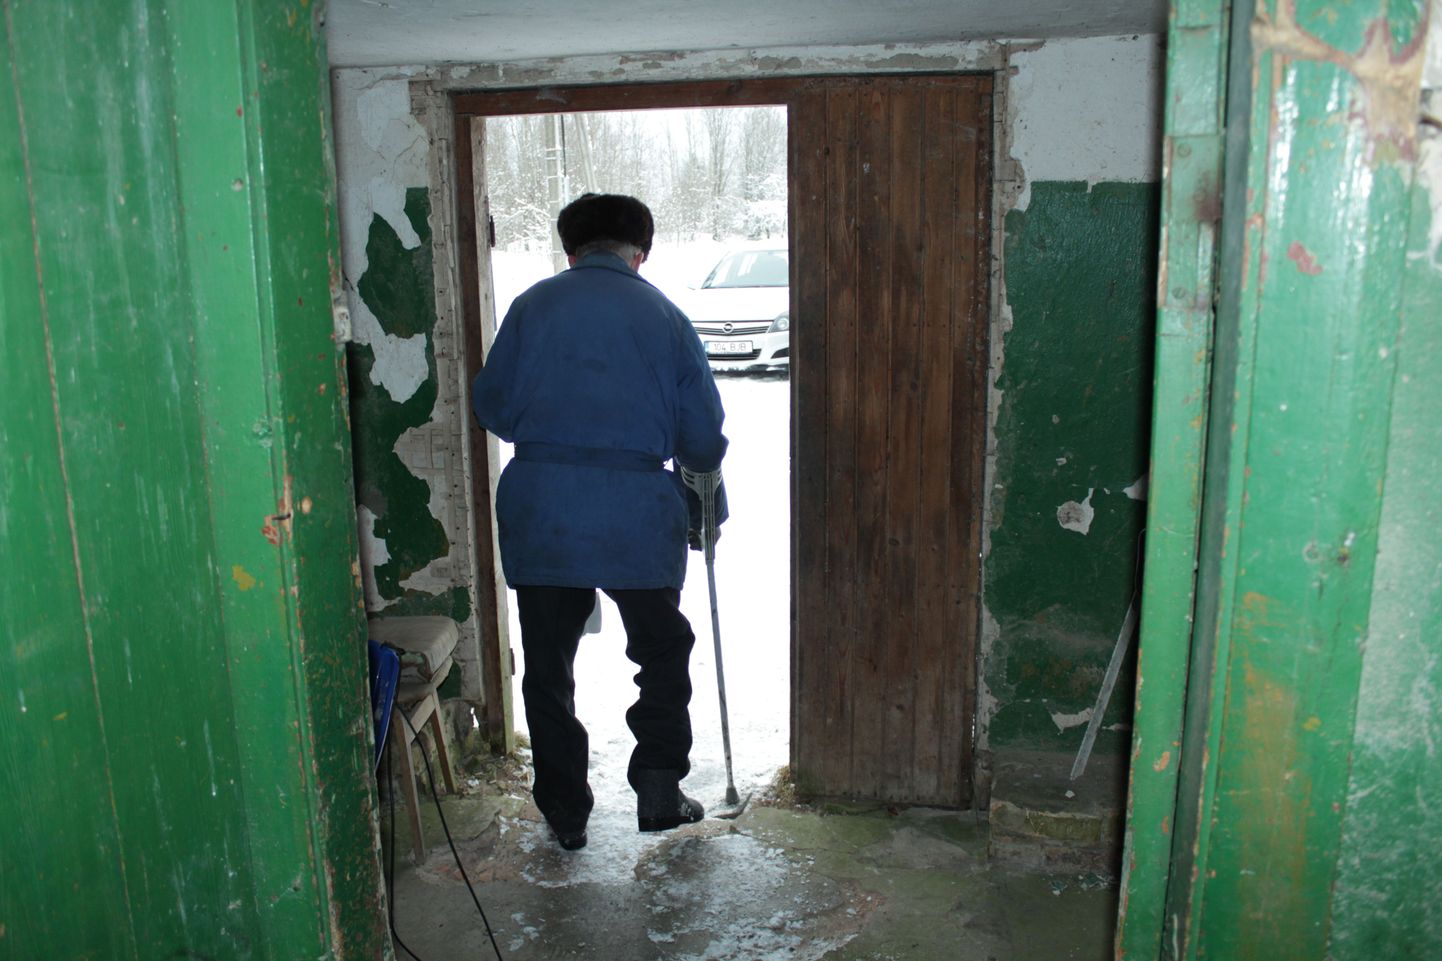 Üks maja kahest järelejäänud elanikust Kalev Romani lahkumas oma alumise korruse korterist. Teadaolevalt elas majas veel üks mees, kuid tema kannab praegu vanglakaristust.